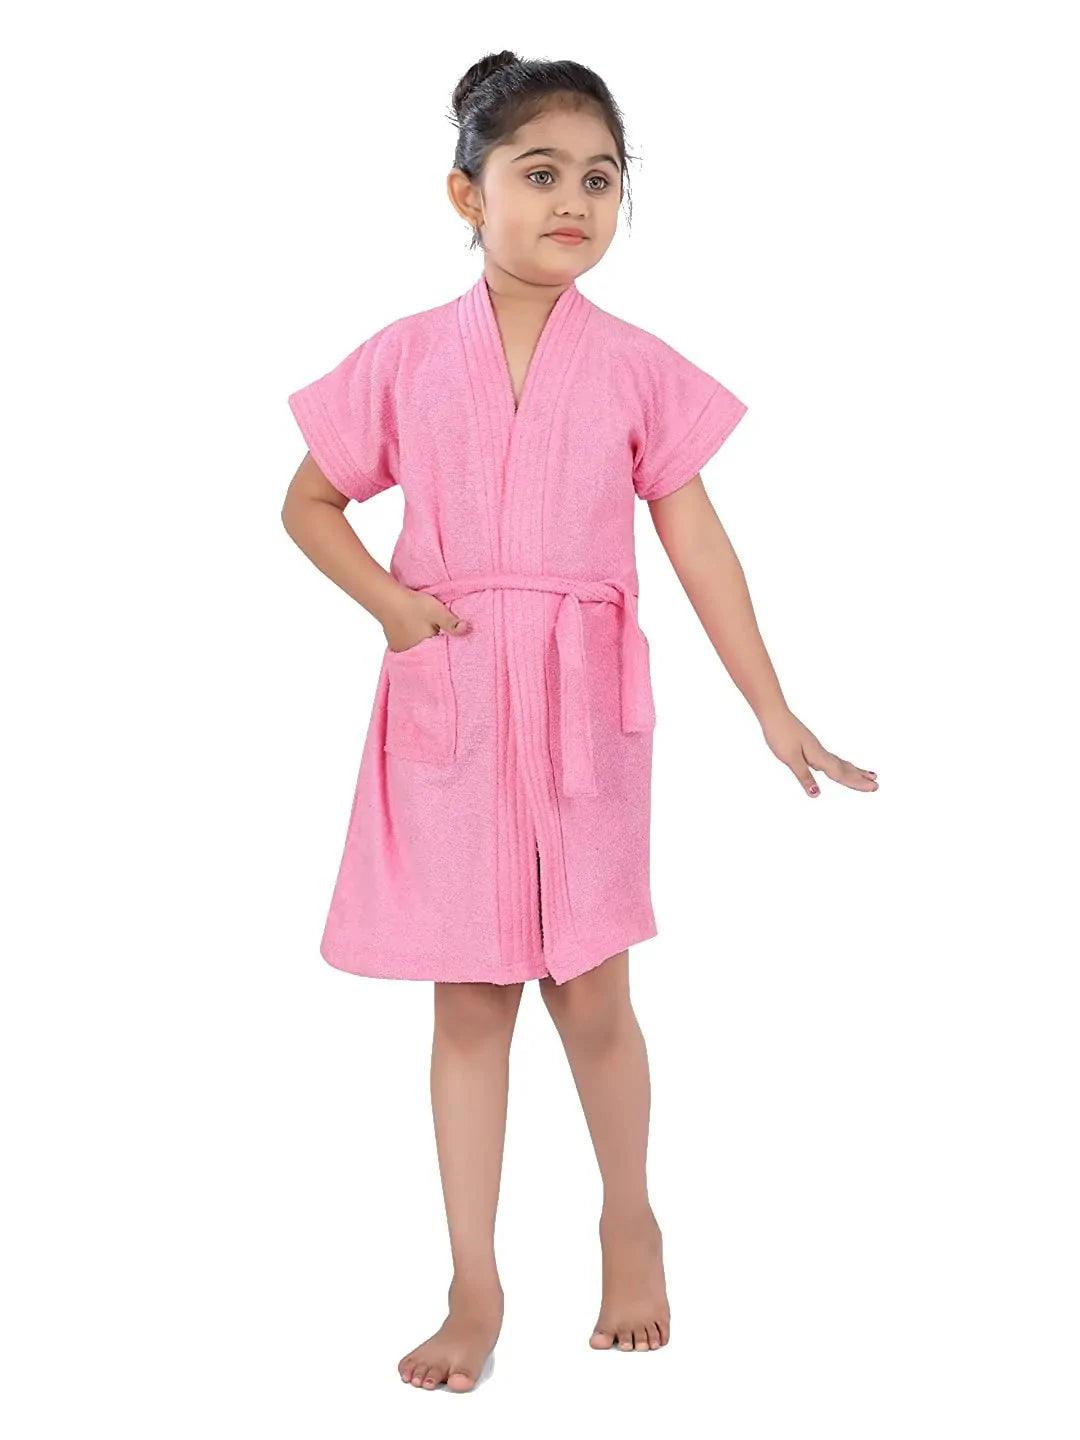 Poorak Terry Free Size Bathorbe Cum Towel Gown 7-8 years - POORAK.IN